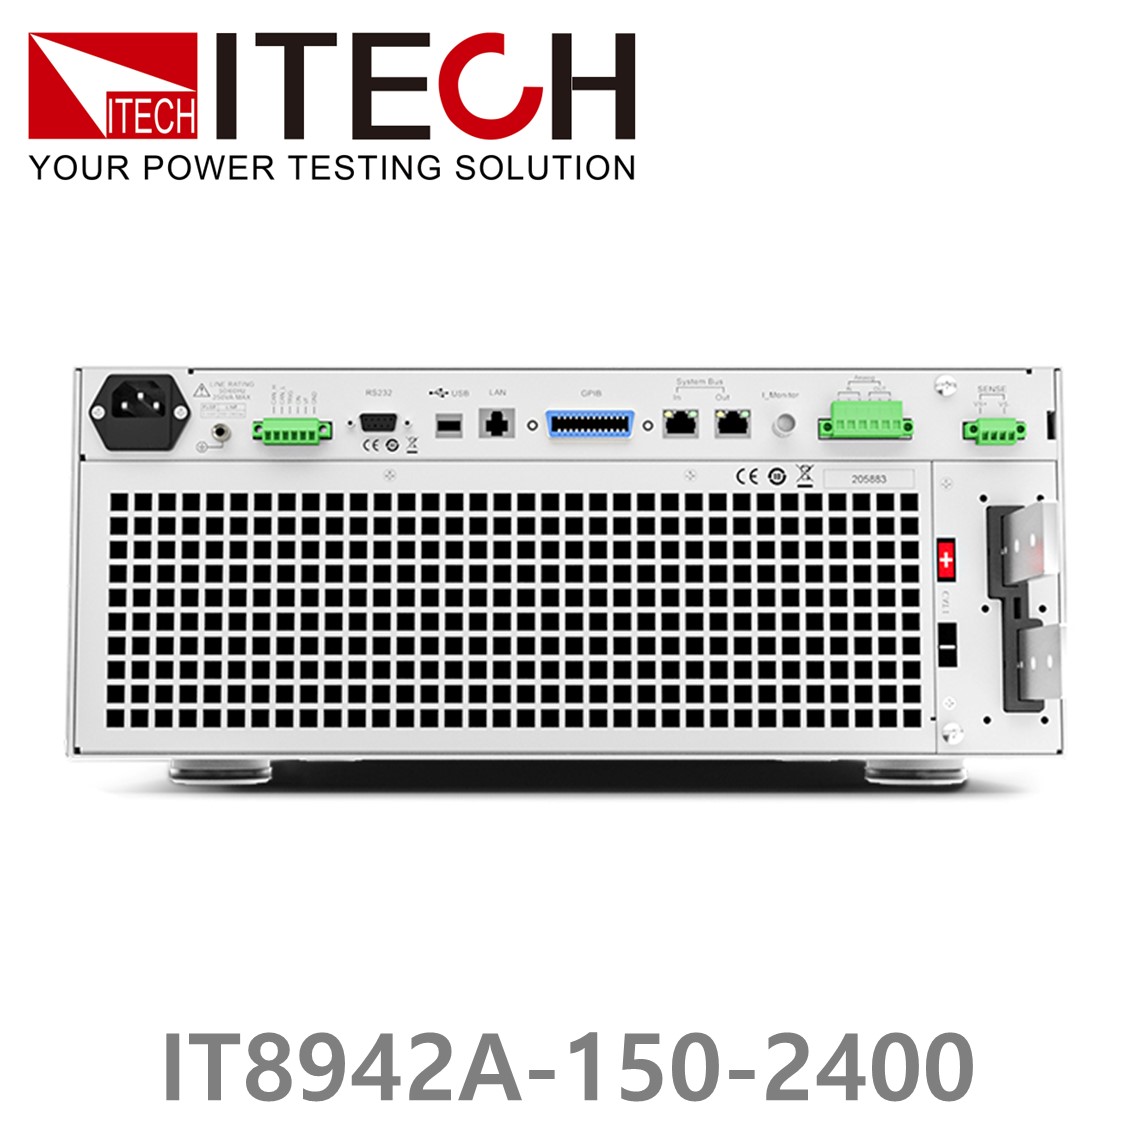 [ ITECH ] IT8942A-150-2400  고성능 고전력 DC 전자로드 150V/2400A/42kW (37U)